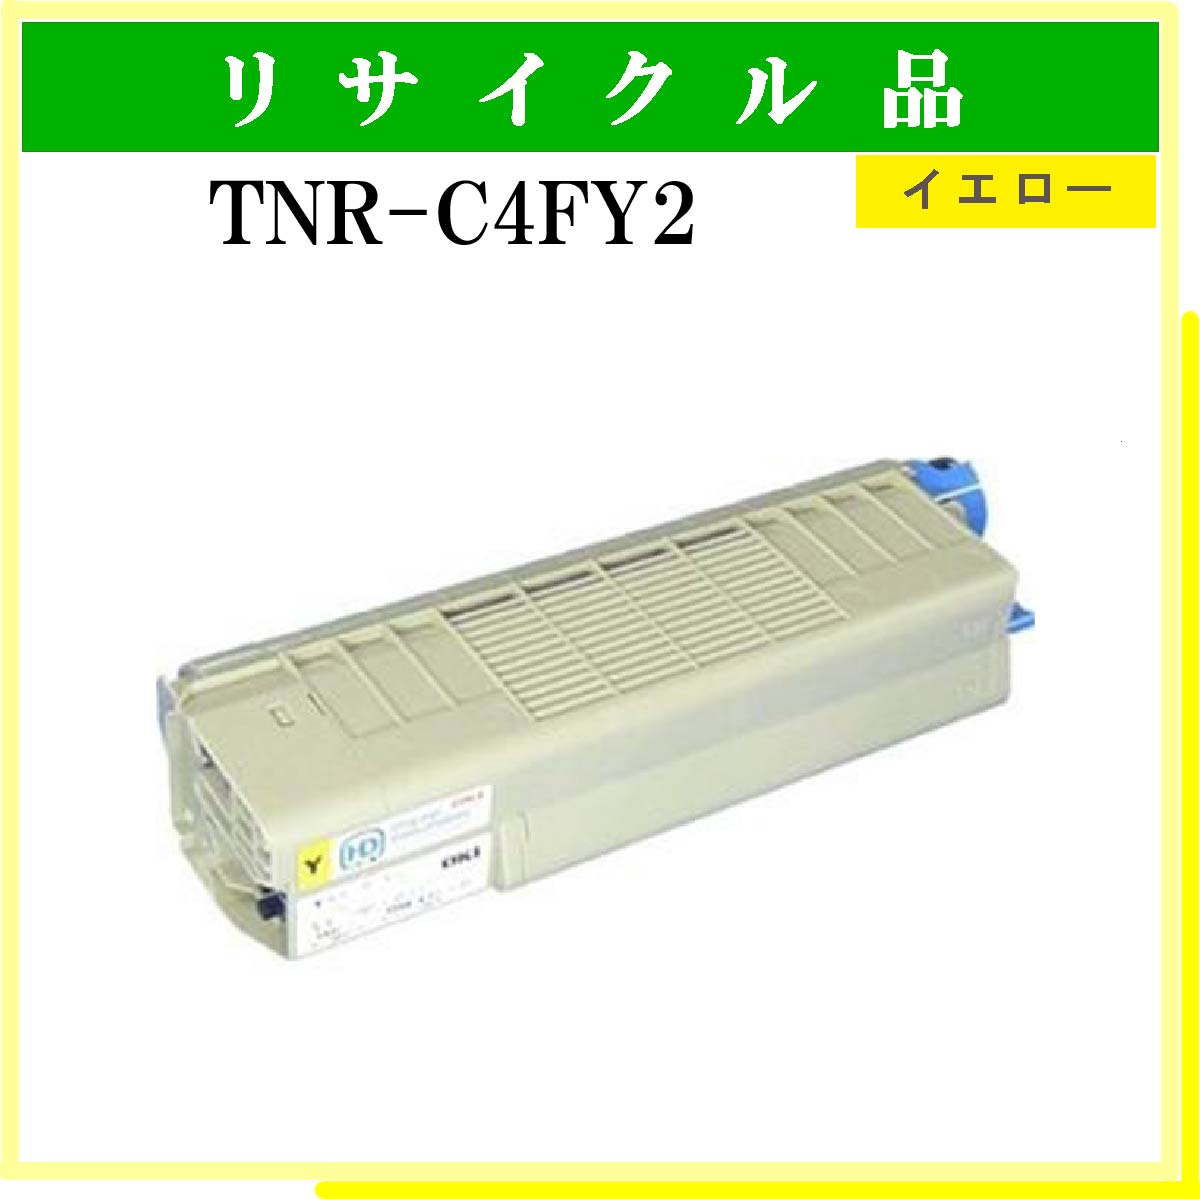 TNR-C4FY2